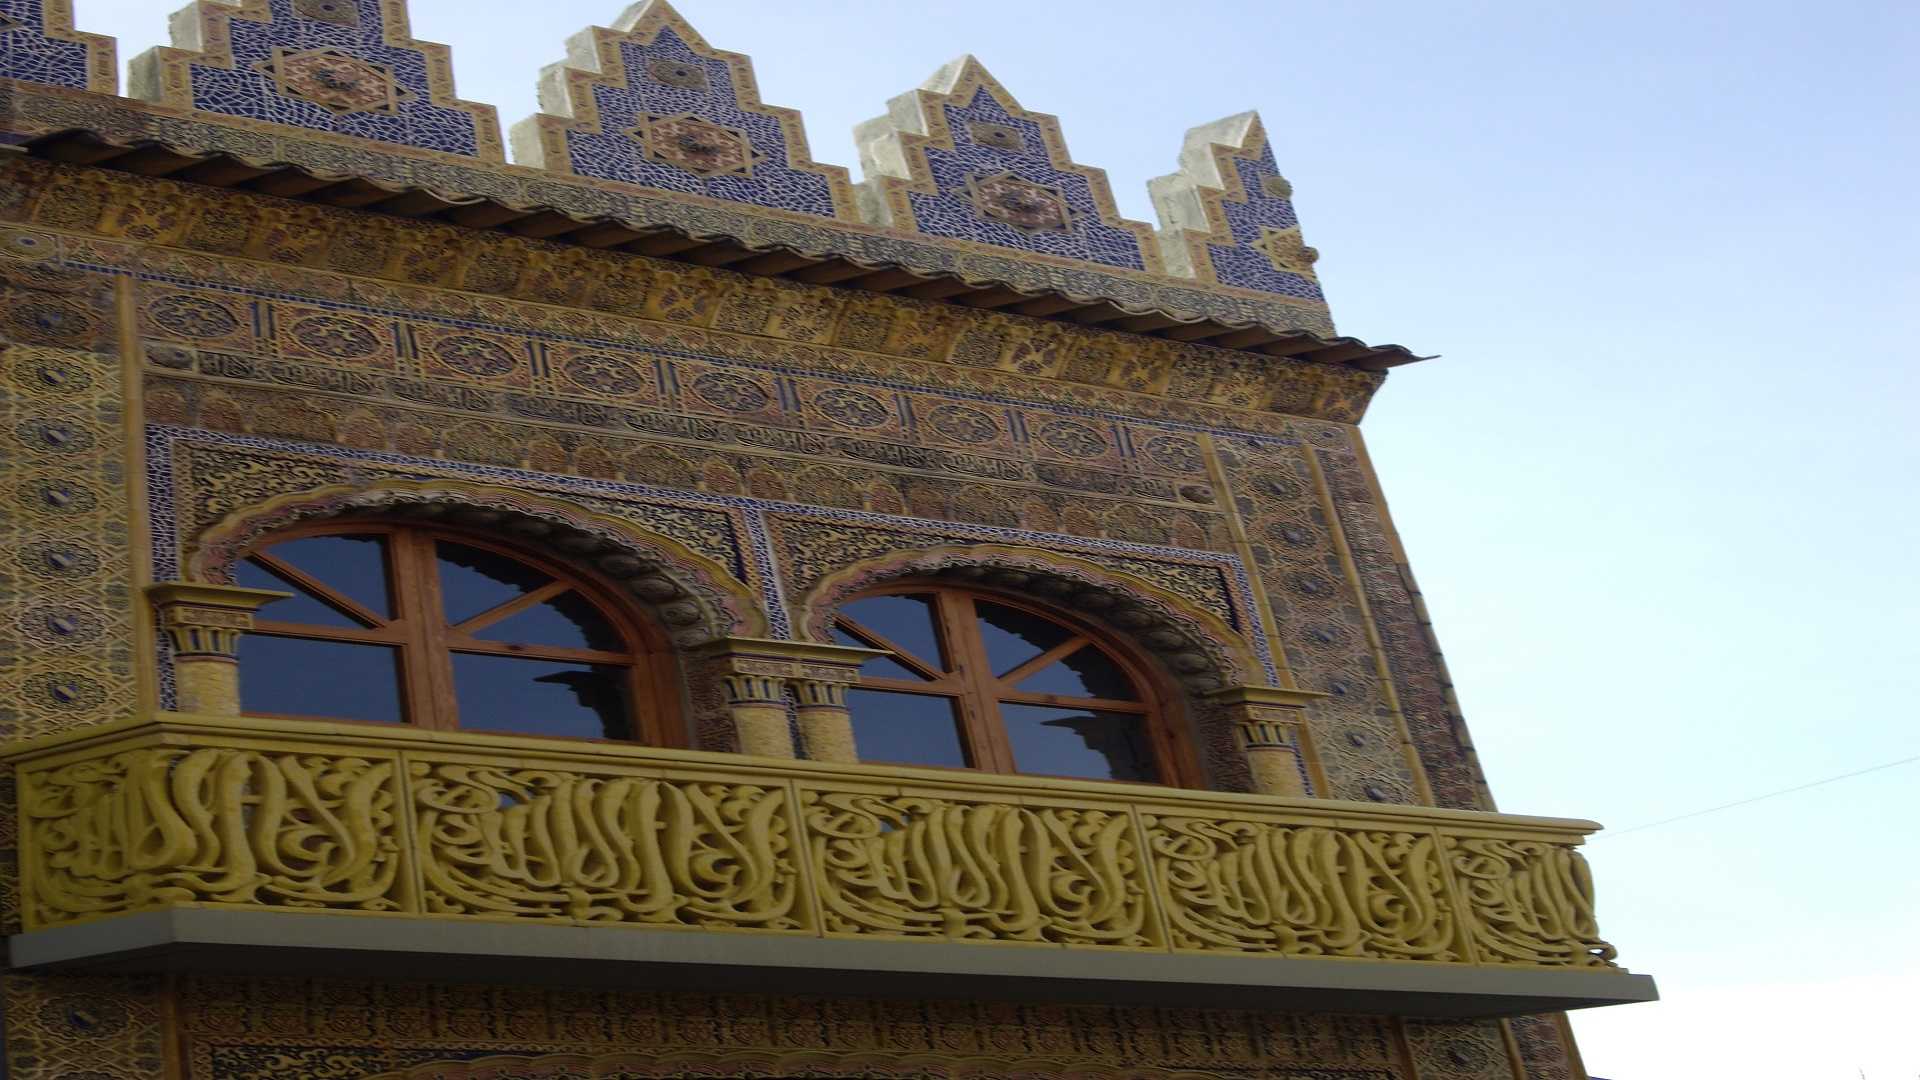 Parte superior del segundo cuerpo de la fachada de El Arte donde se ve la imagen de un balcón con dos ventanas, en colores amarillo y azul, de estilo hispano-árabe, inspirado en las yeserías de la Alhambra.  